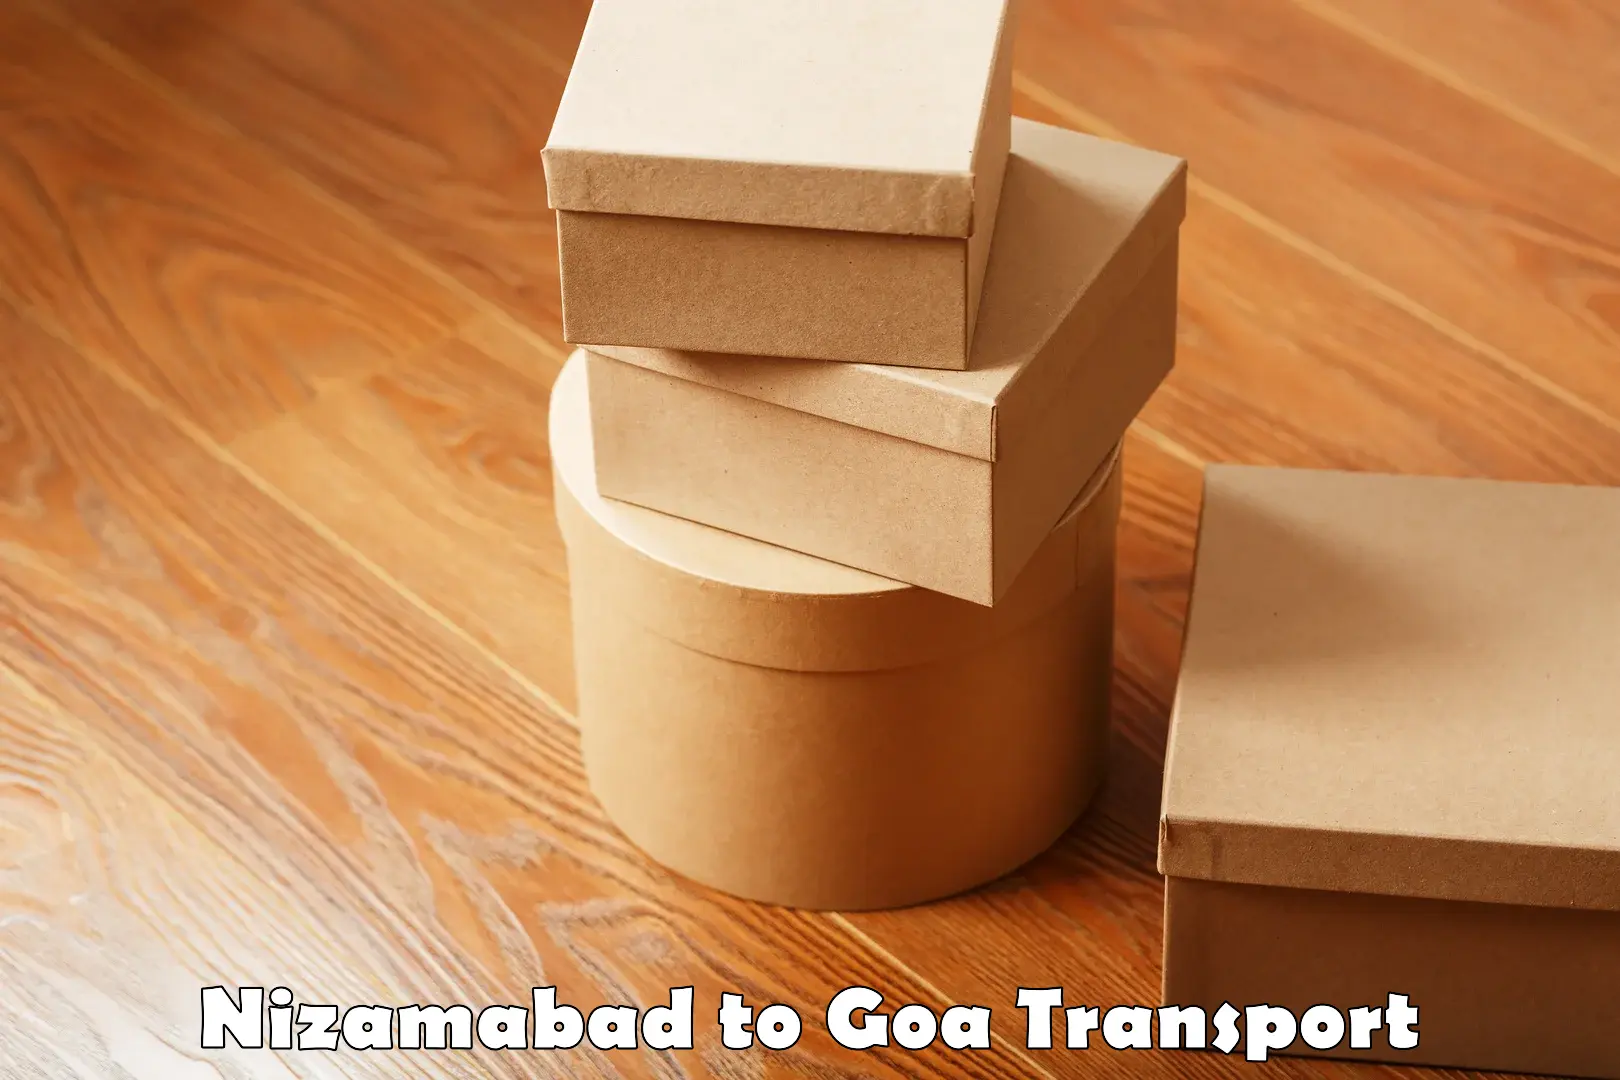 Container transport service Nizamabad to Goa University